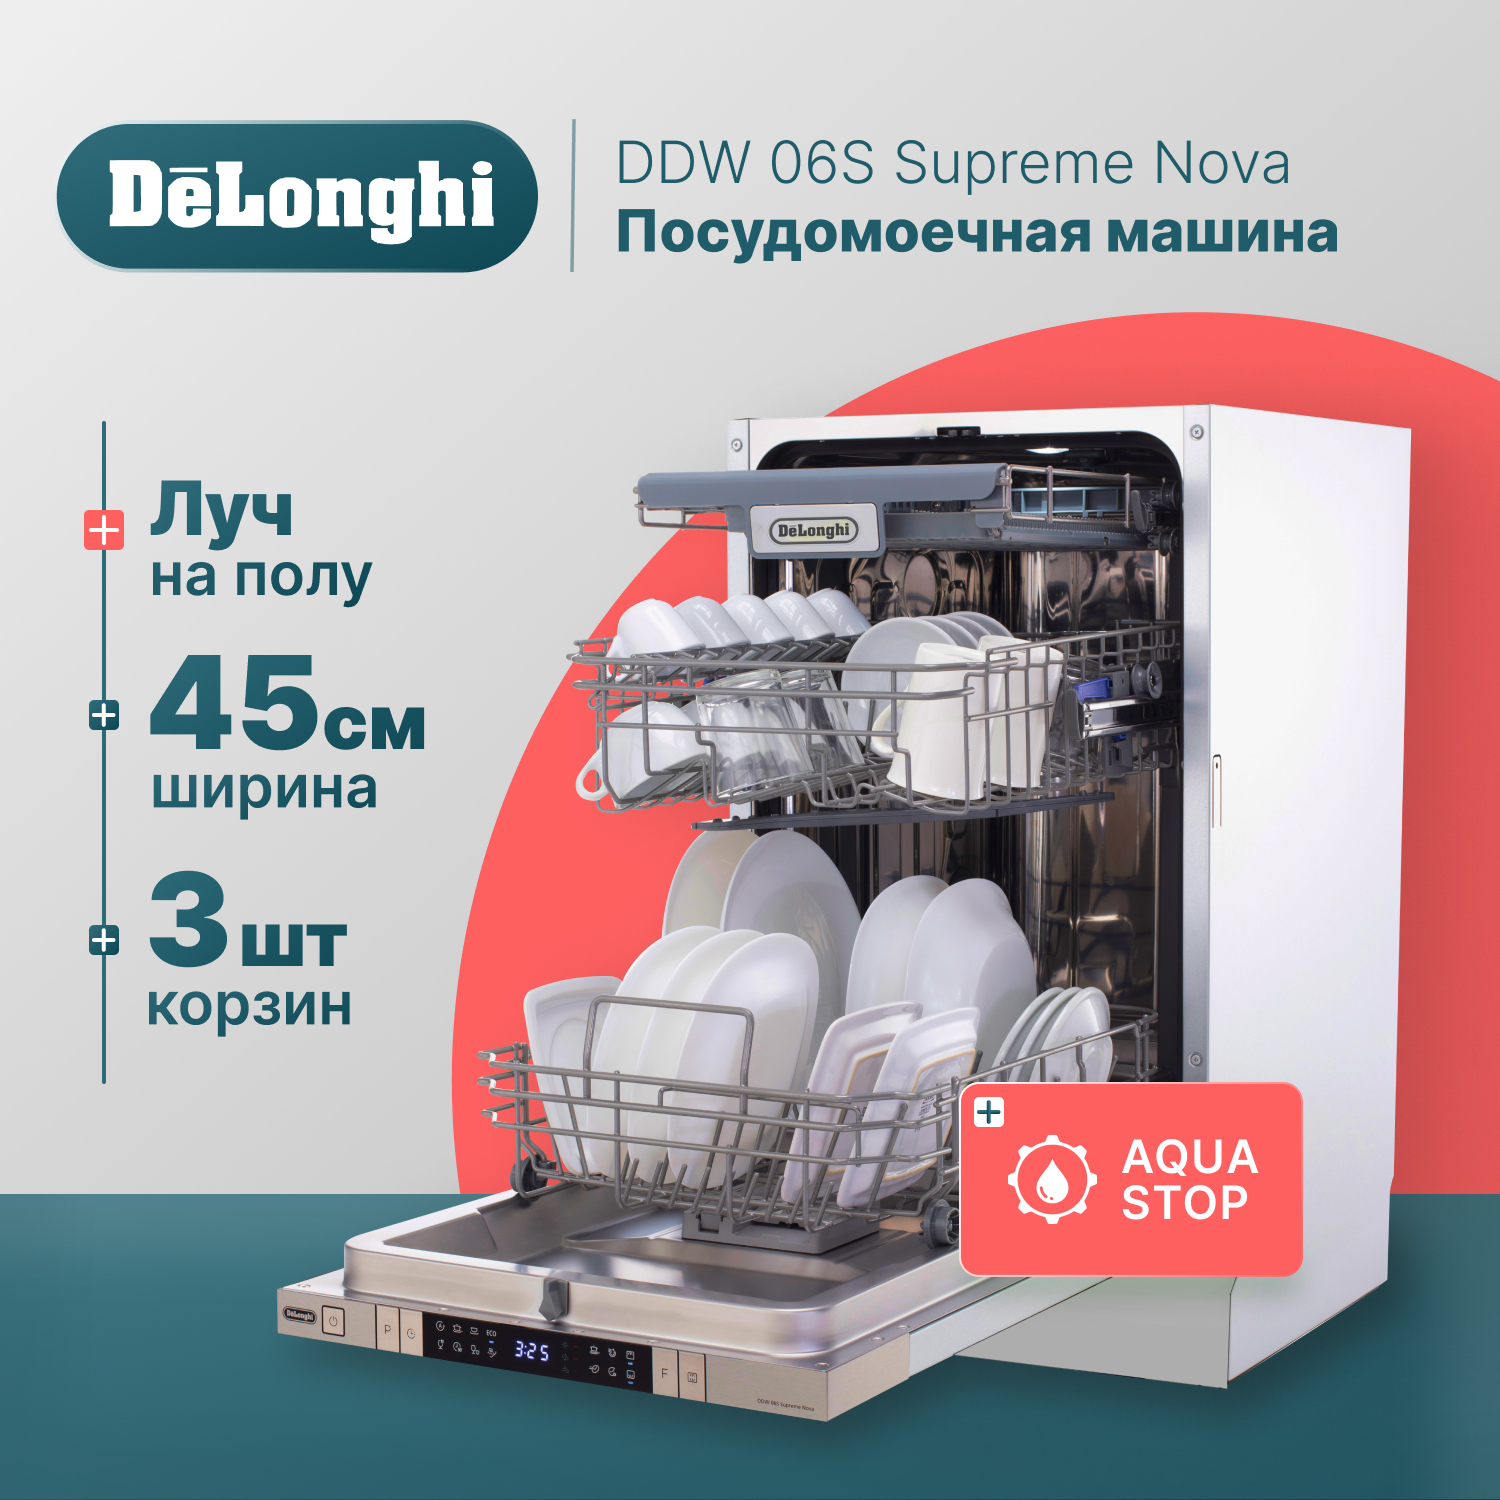 Встраиваемая посудомоечная машина Delonghi DDW06S Supreme Nova встраиваемая посудомоечная машина delonghi ddw 06 f supreme nova